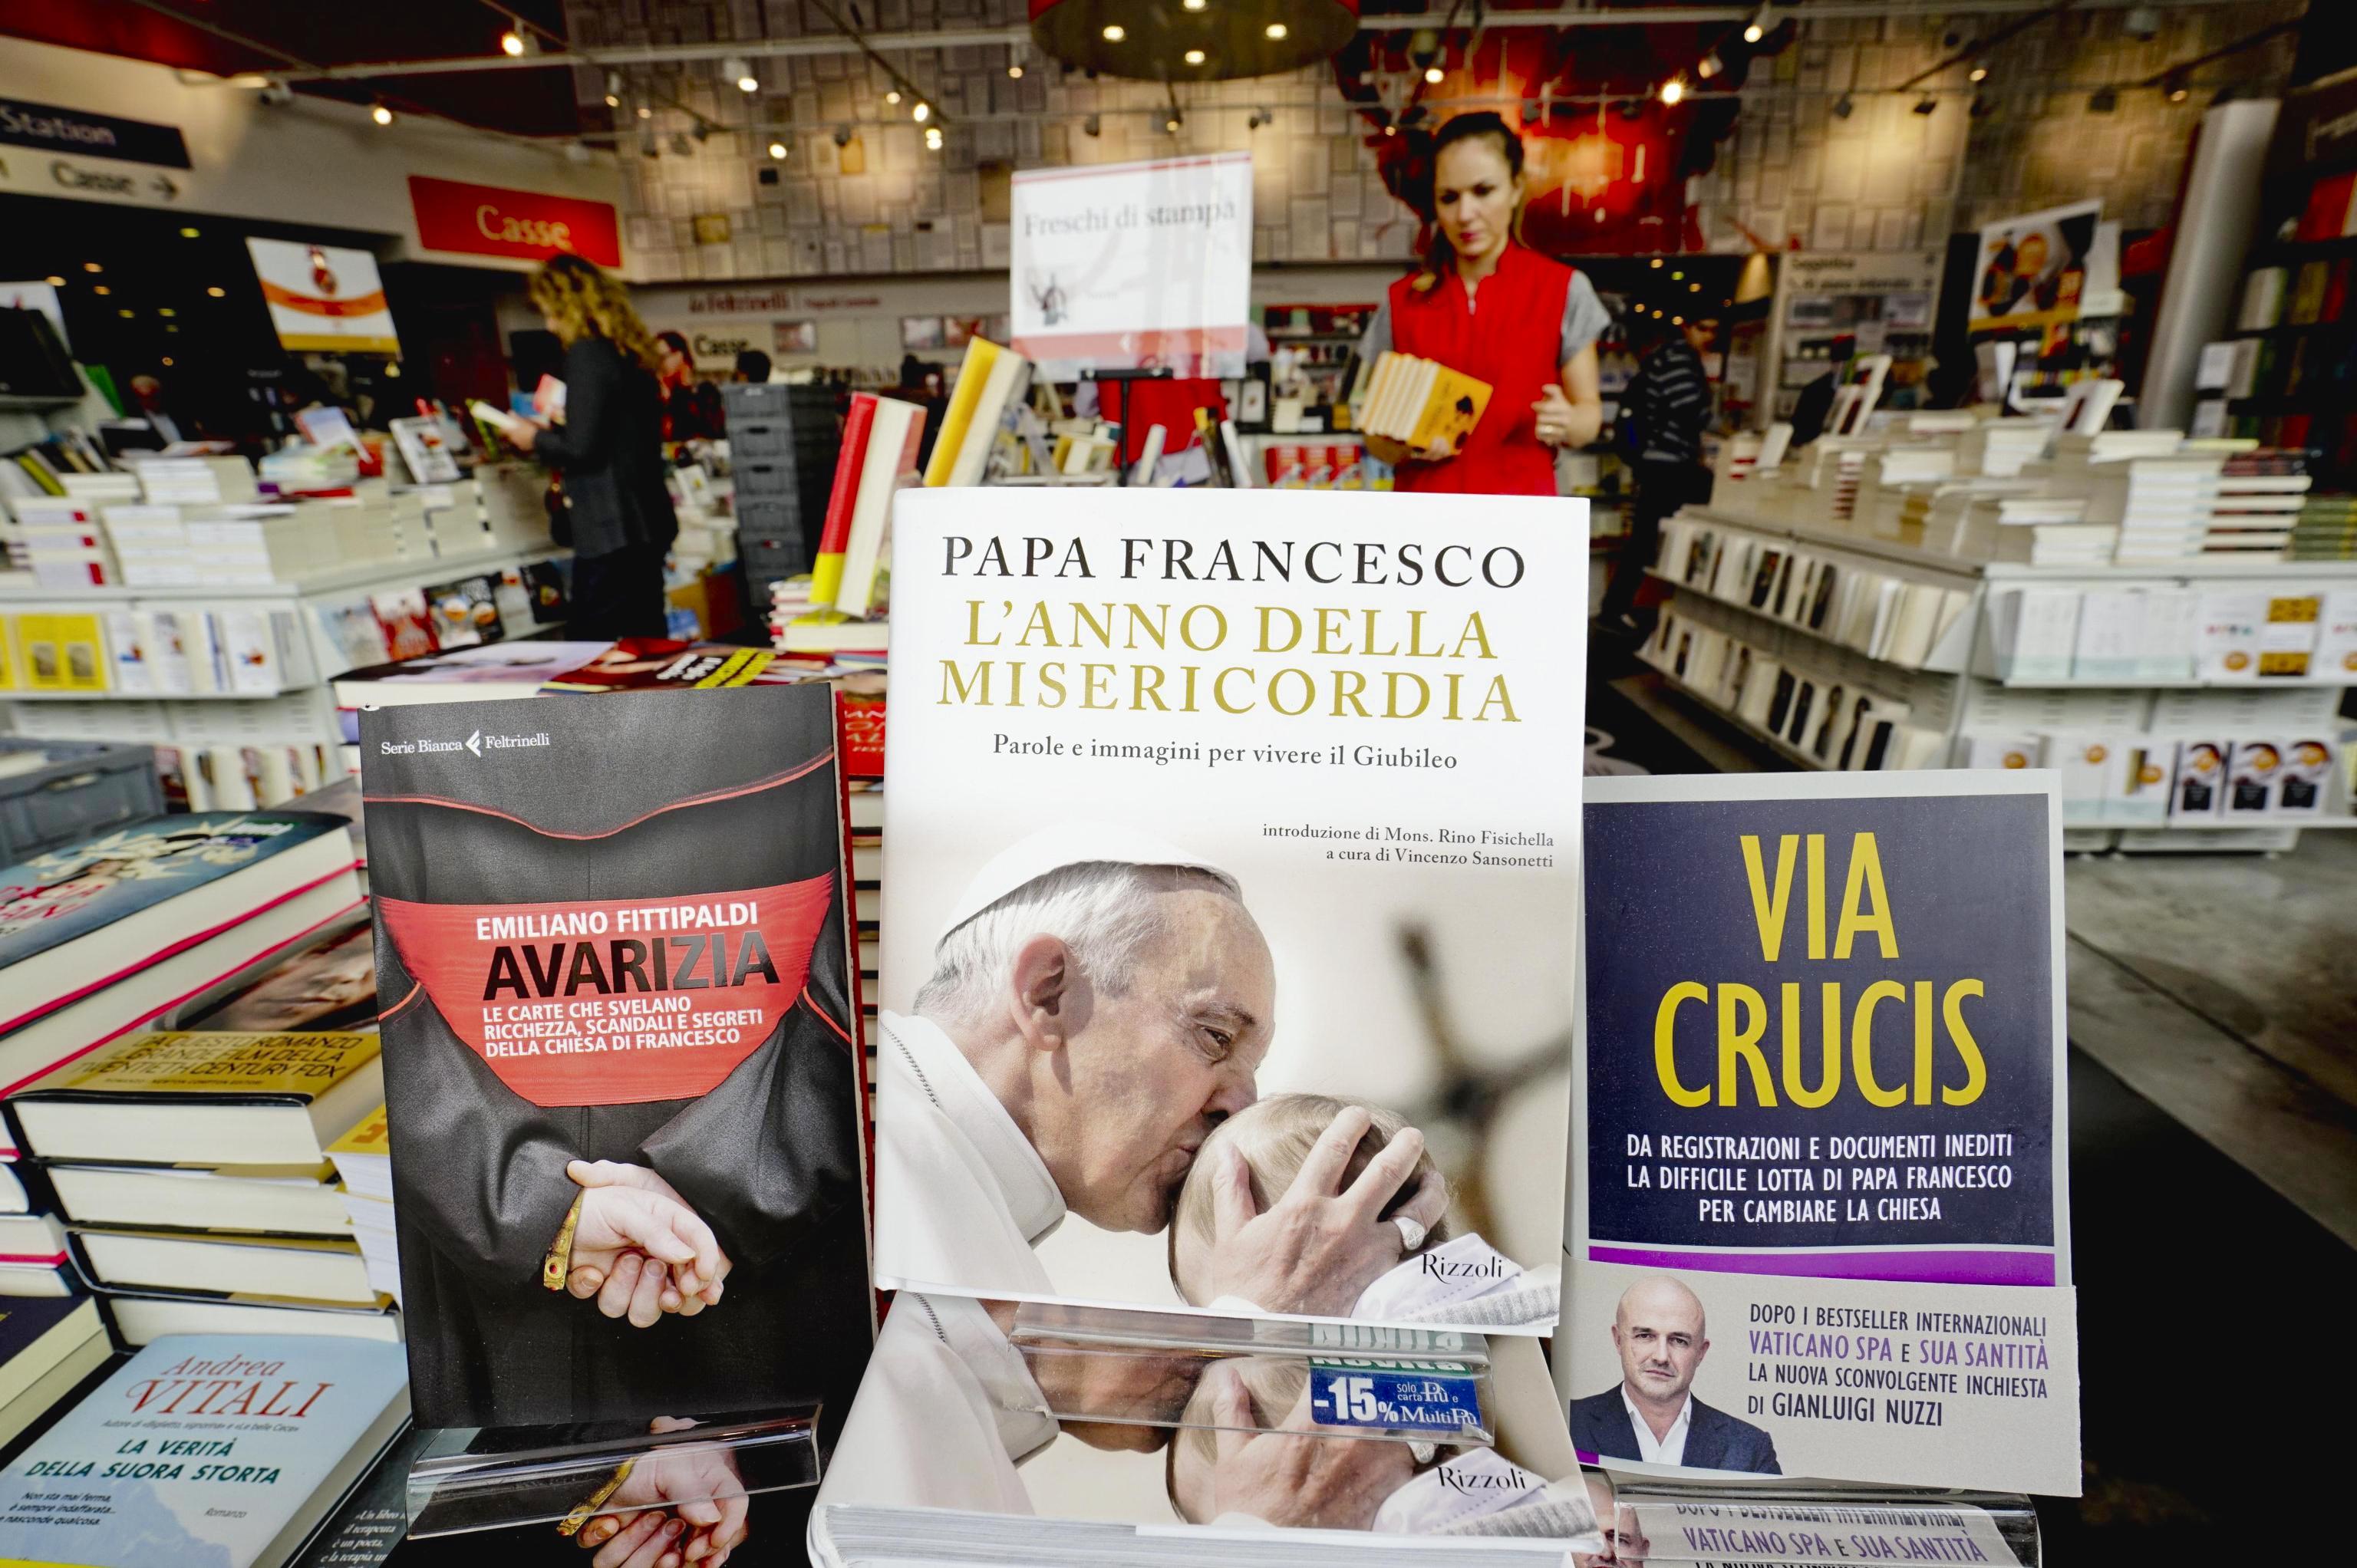 The books of Emiliano Fittipaldi 'Avarizia' and Gianluigi Nuzzi ' Via Crucis'